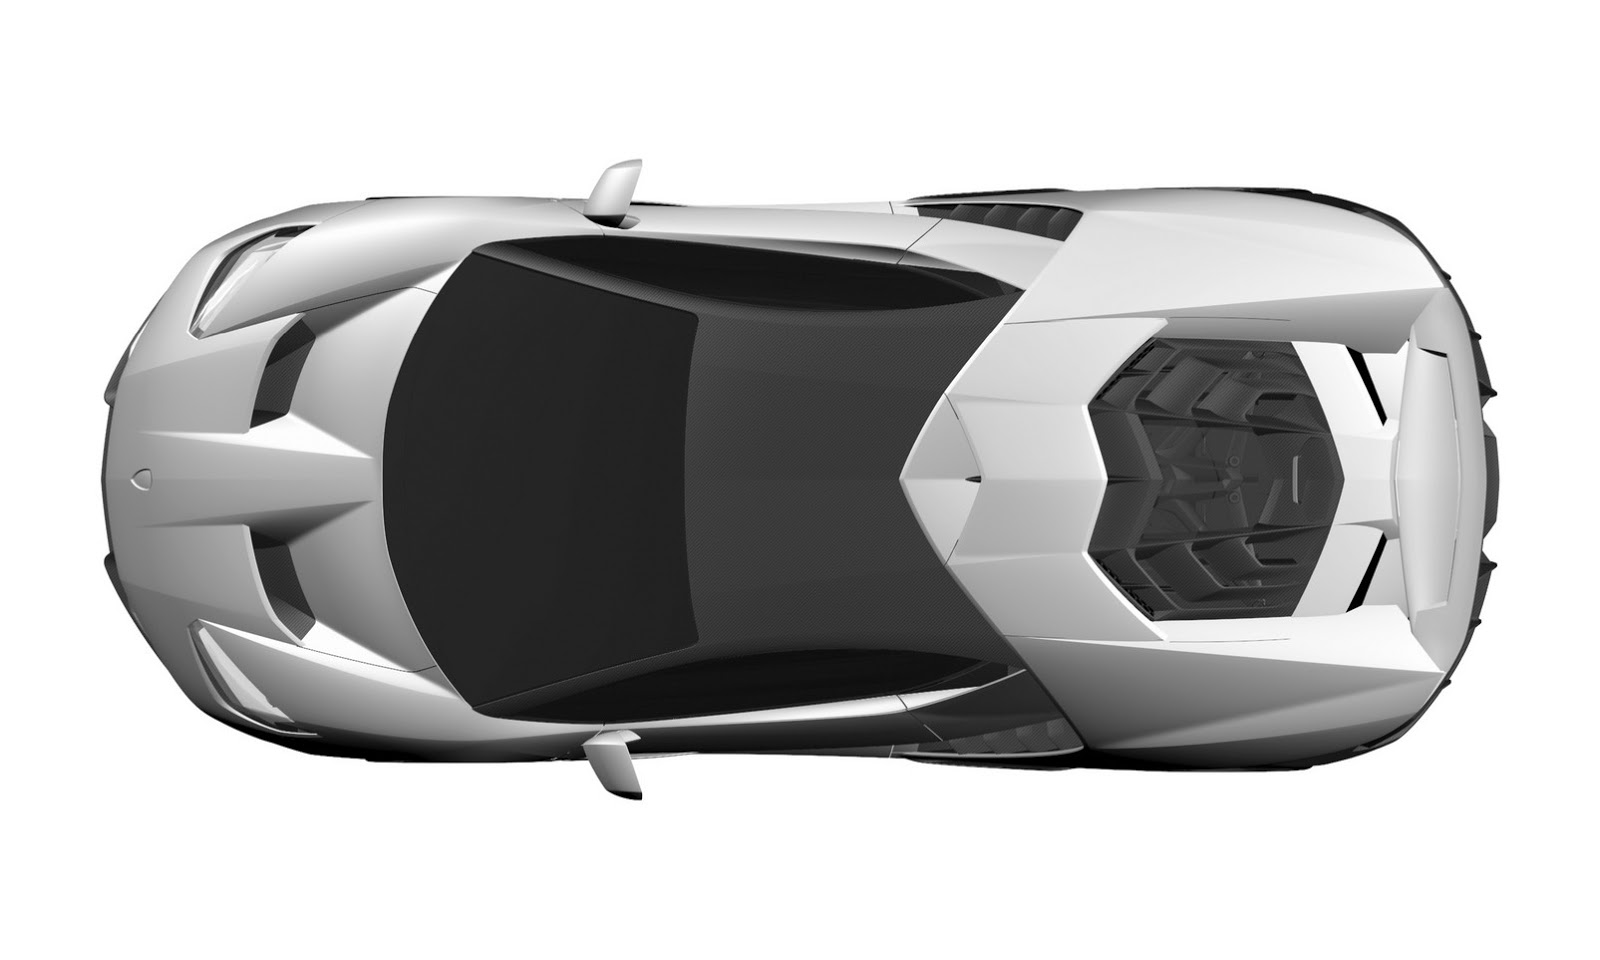 Lamborghini Centenario LP 770-4 Leaked, Looks like a Futuristic